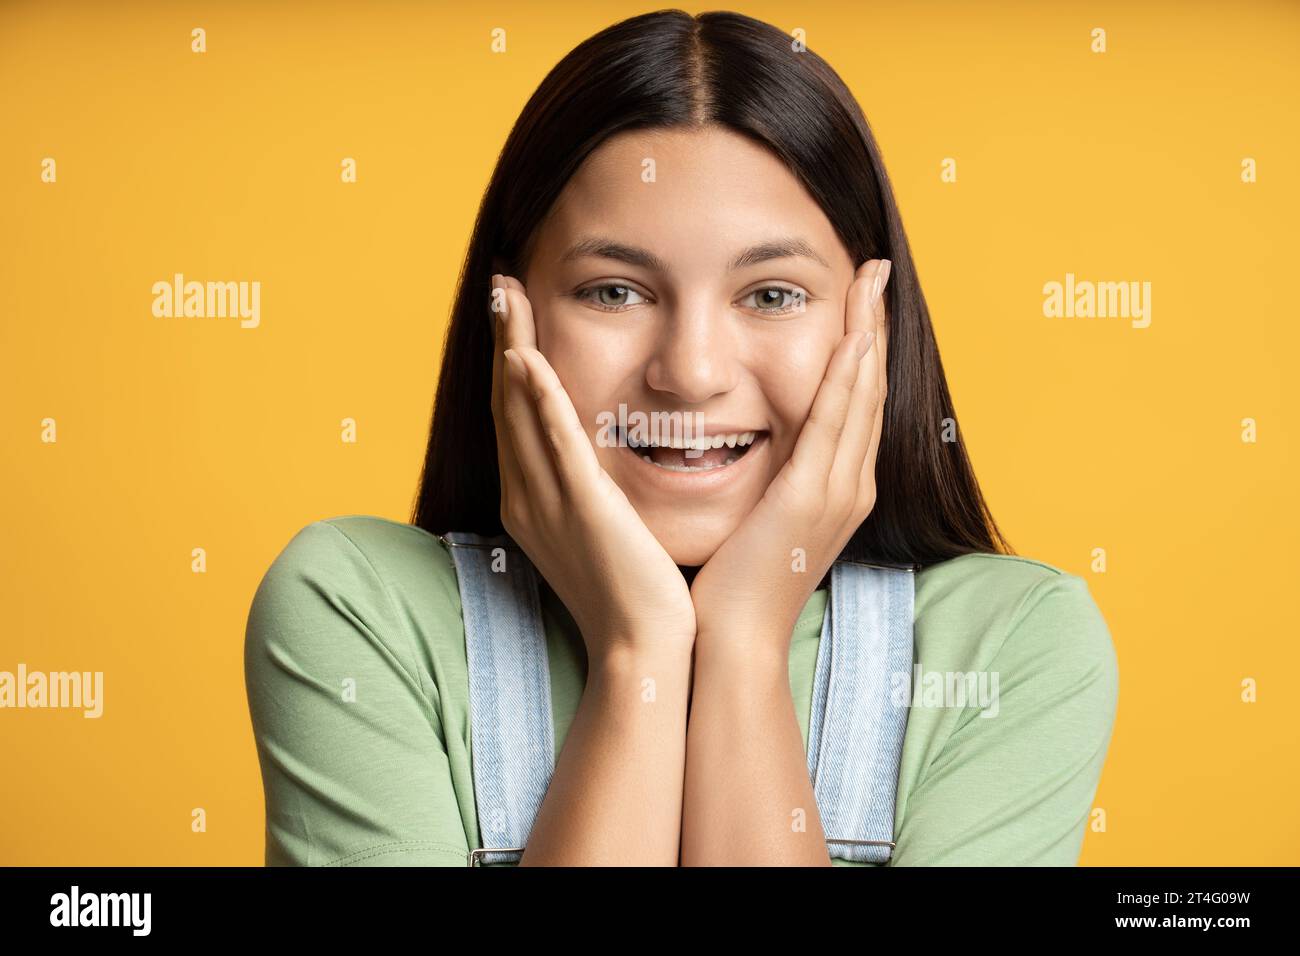 Ritratto in studio ha scattato una ragazza adolescente felice che guarda la fotocamera sorridente su sfondo giallo. Foto Stock